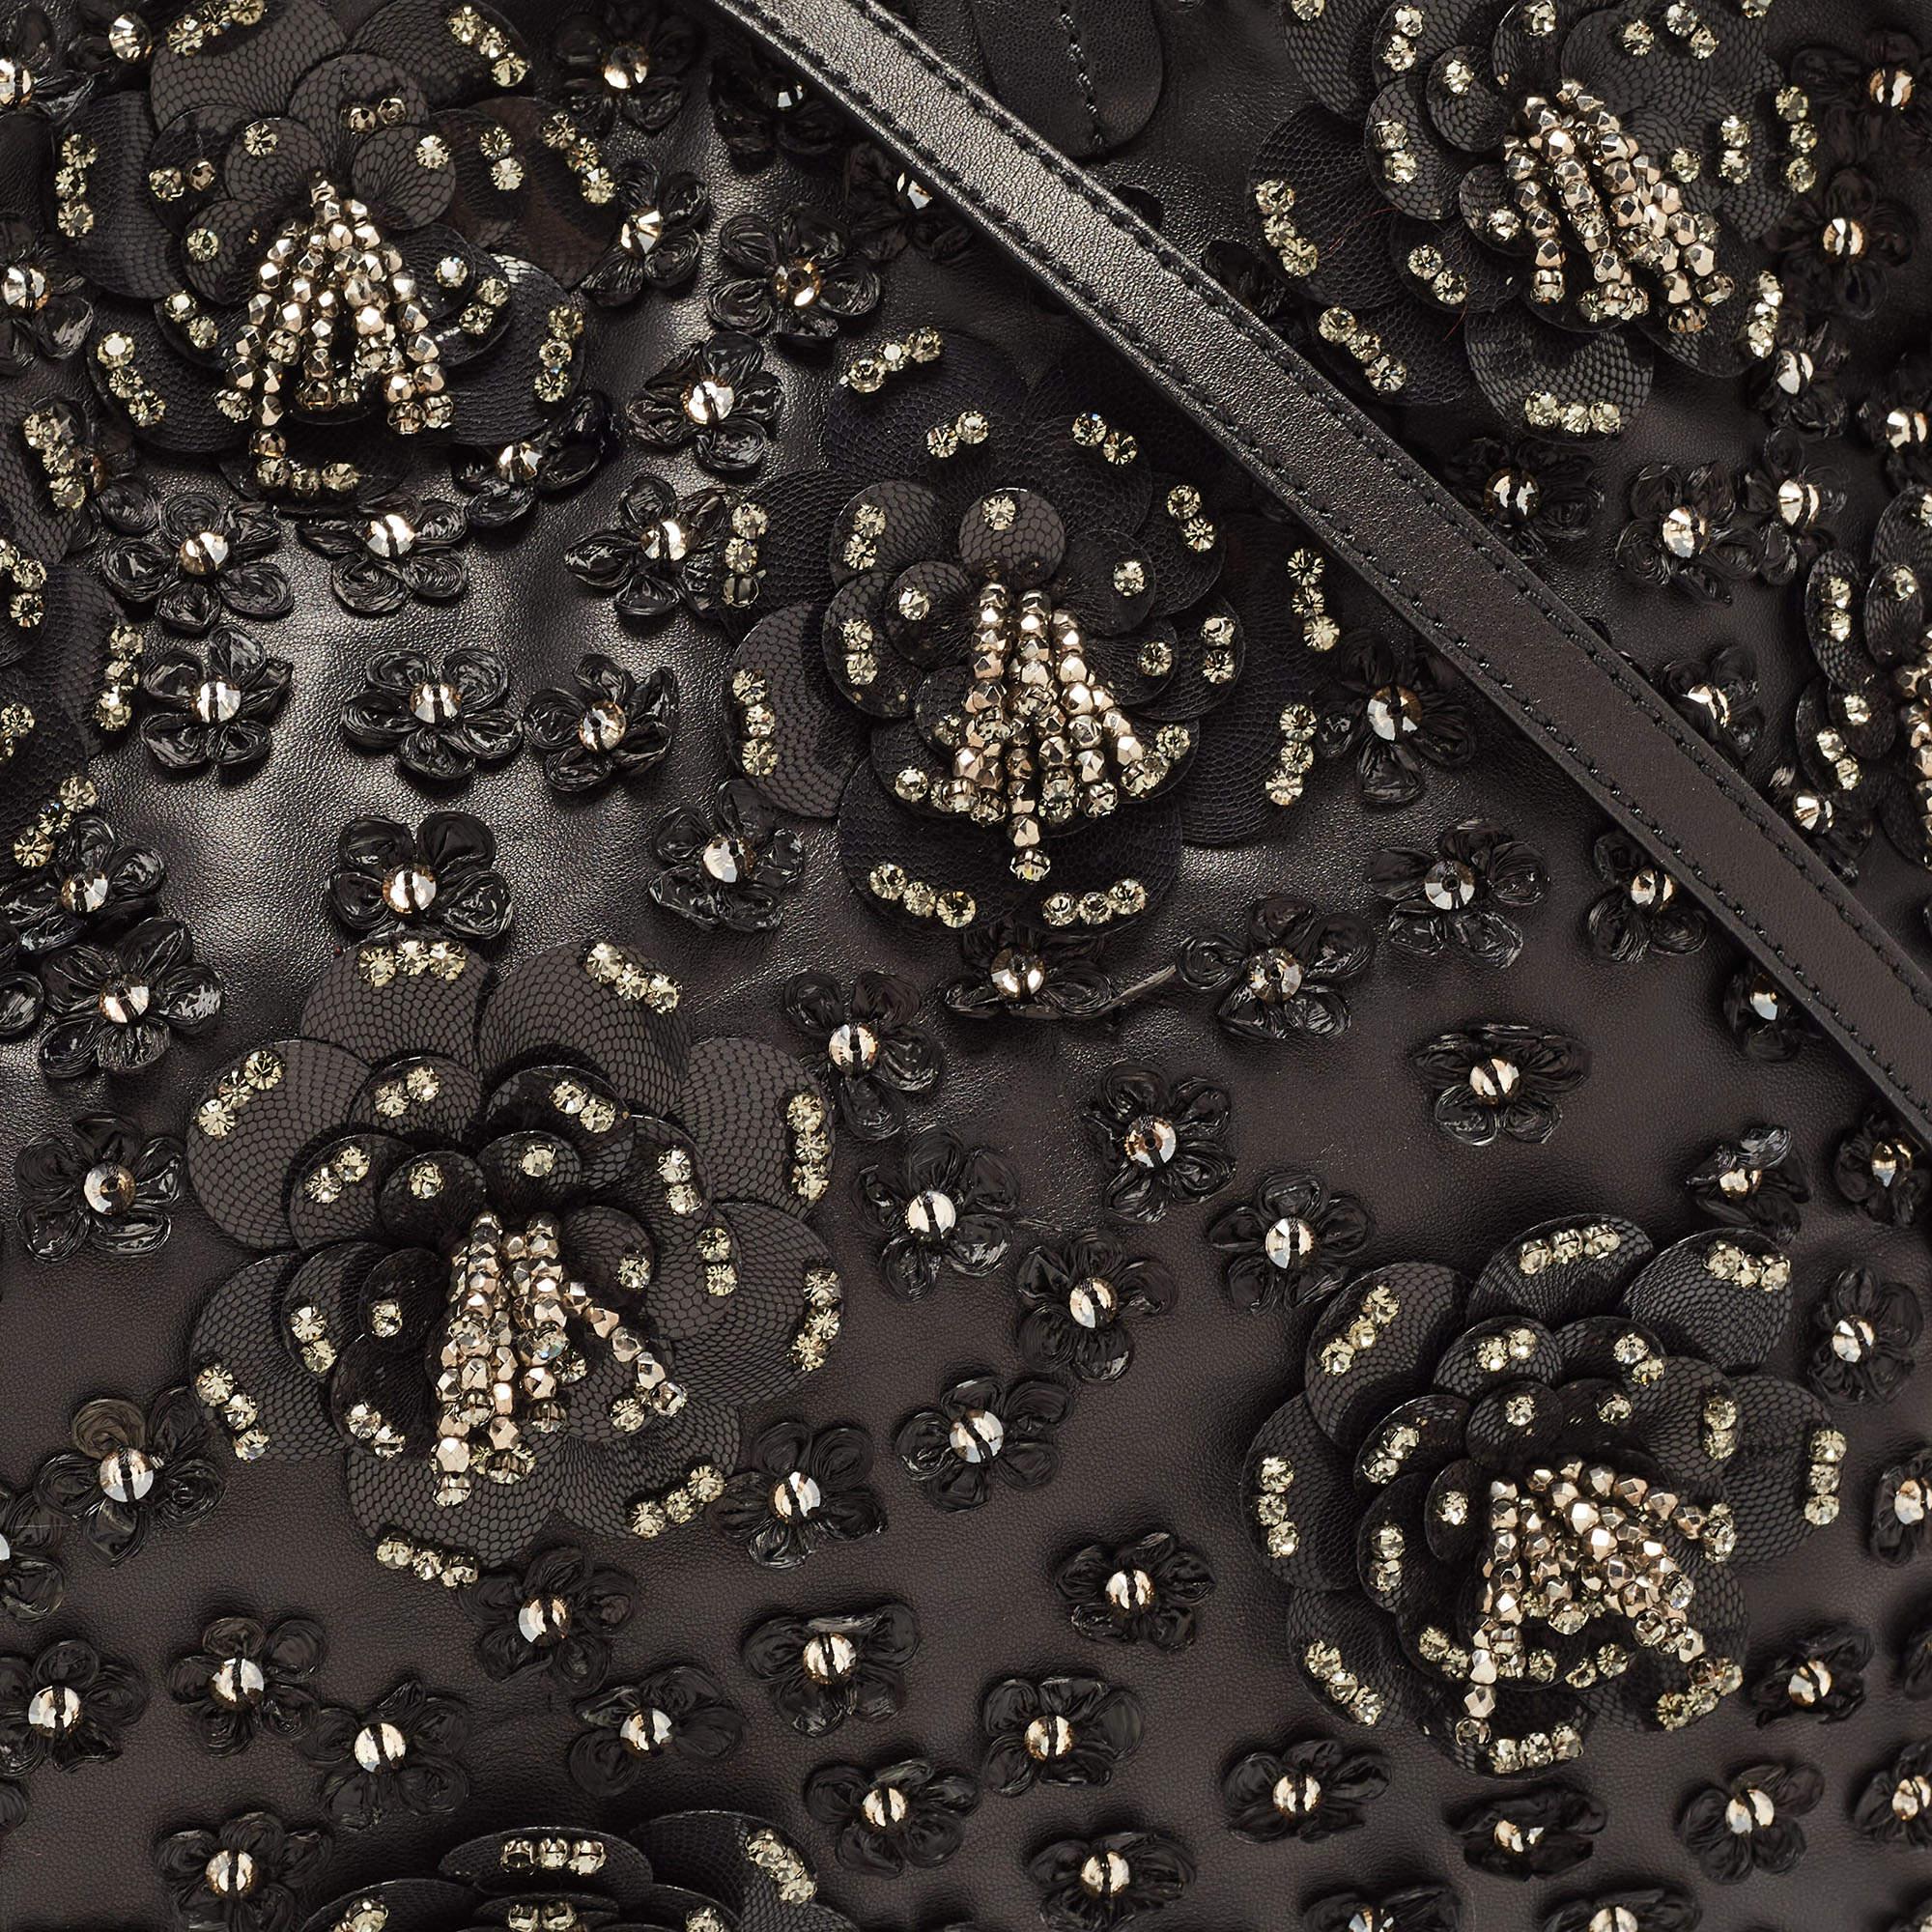 Valentino Black Leather Crystal Embellished Floral Applique Tote 10